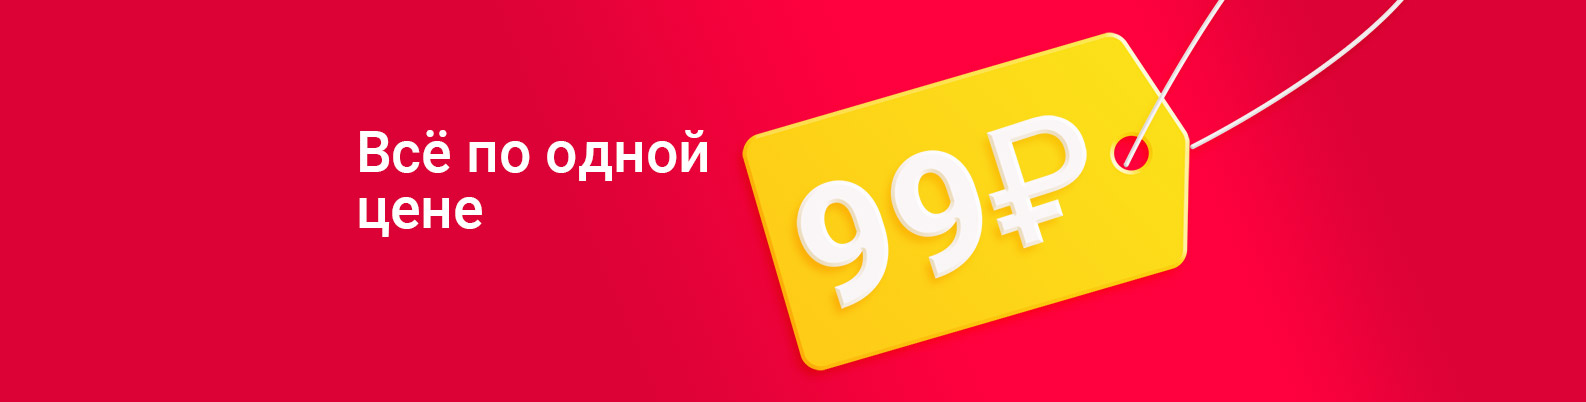 Optrf ru оптовый интернет магазин одежды. Супер цена 99 рублей.